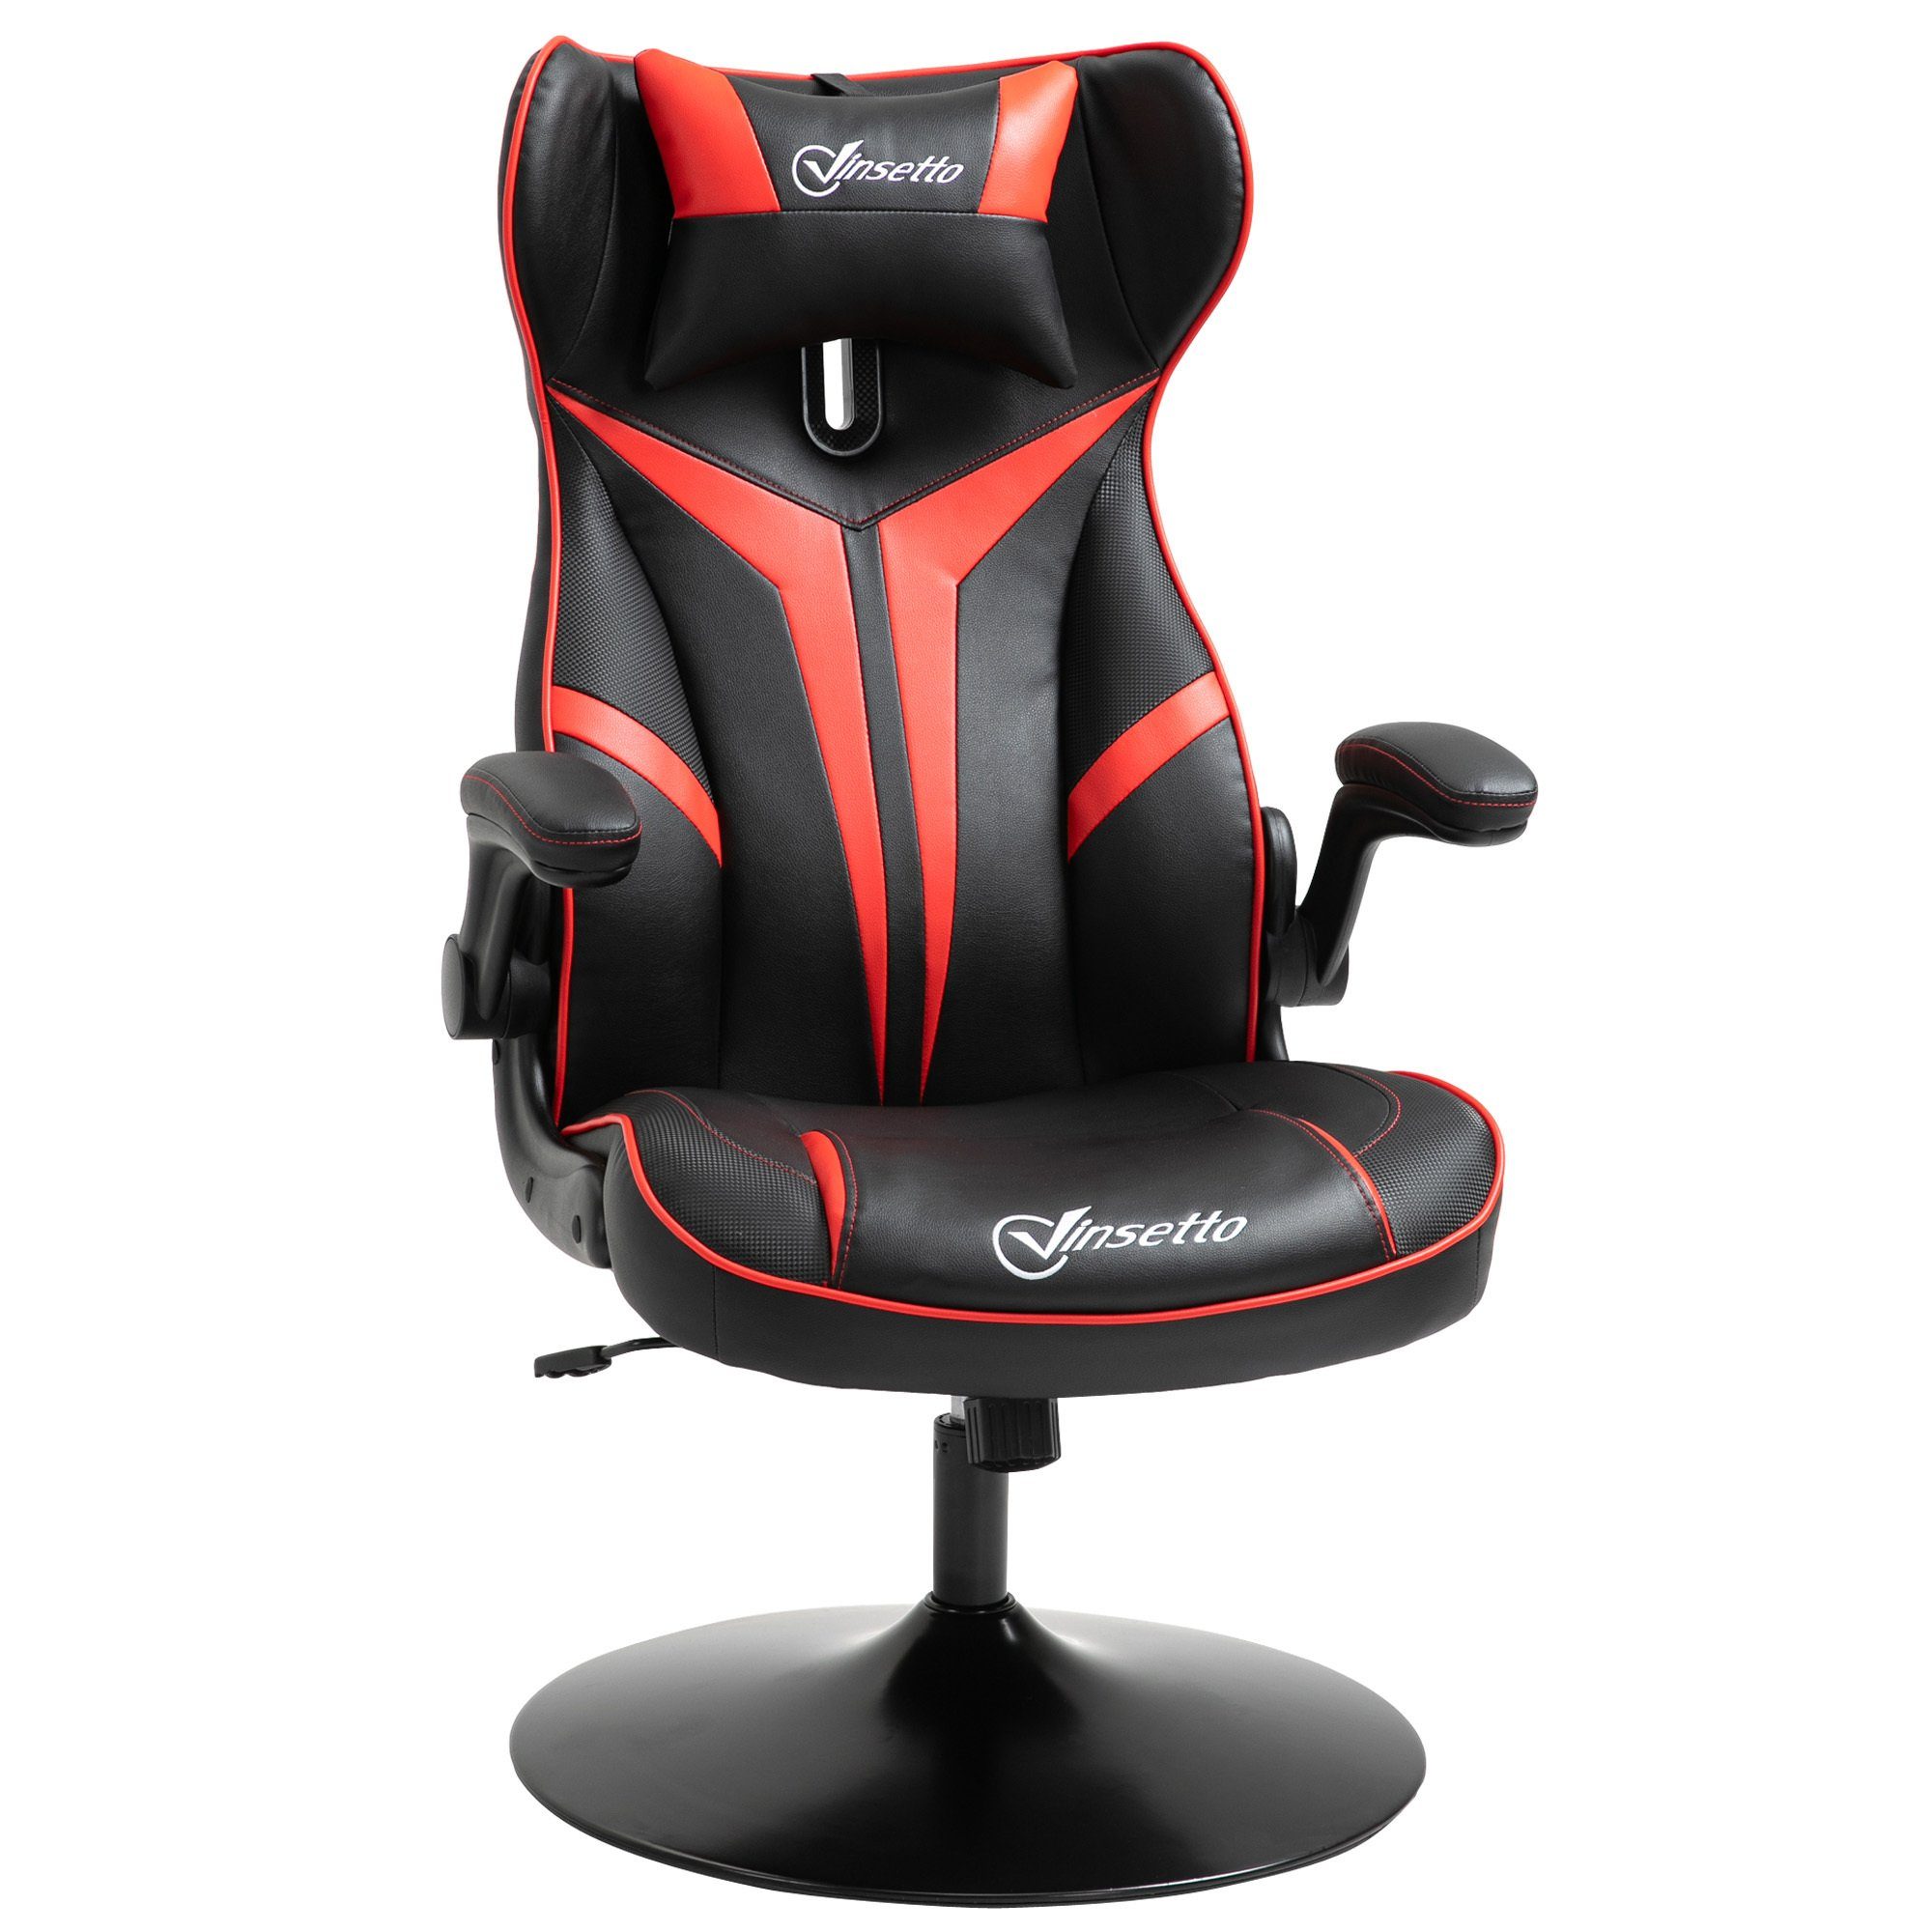 Vinsetto Schreibtischstuhl Gaming Stuhl ergonomisch schwarz/rot | schwarz/rot